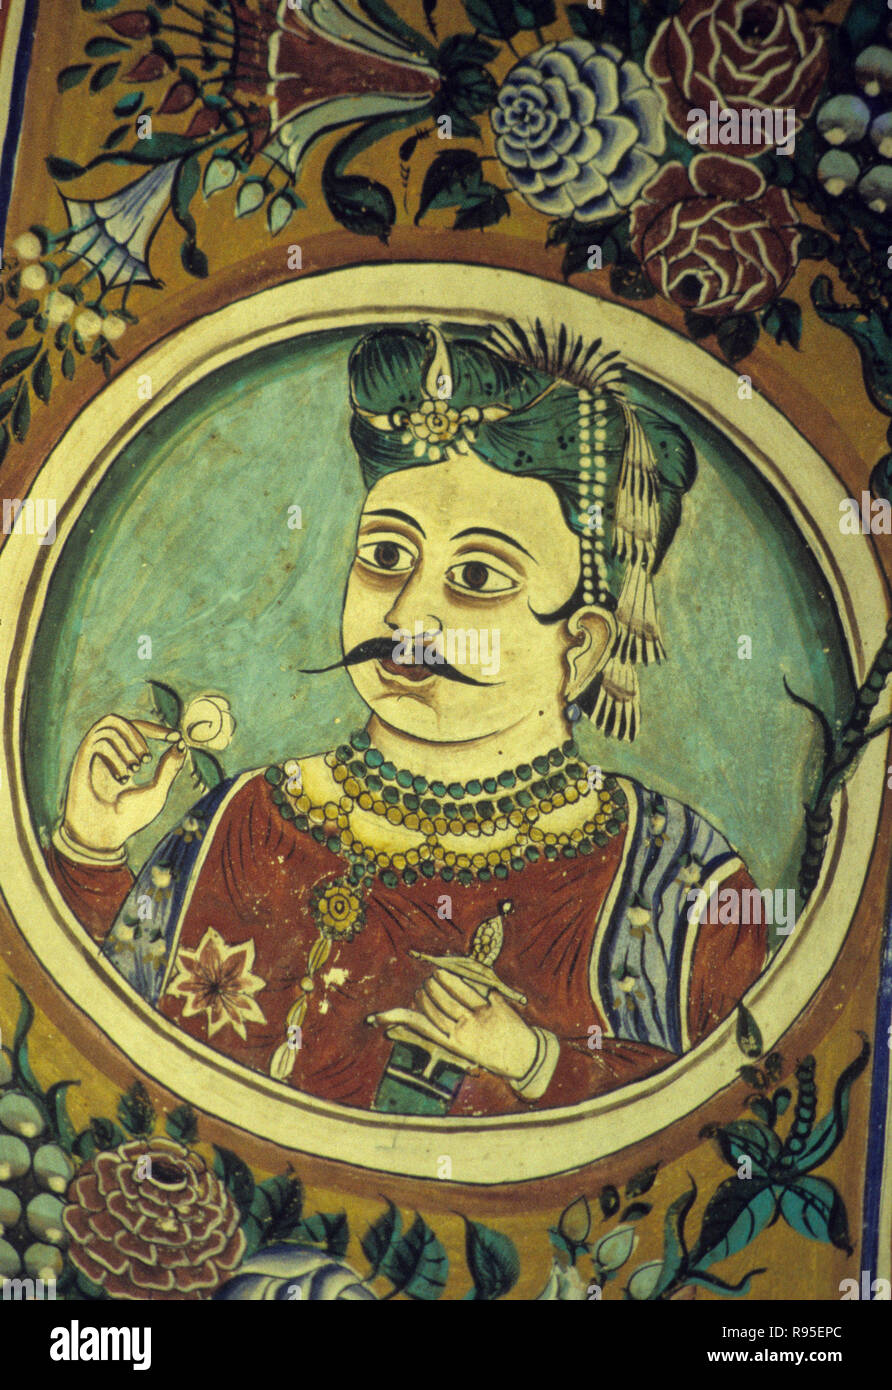 La pintura de la pared del rey, shekhawati, Rajasthan, India Foto de stock